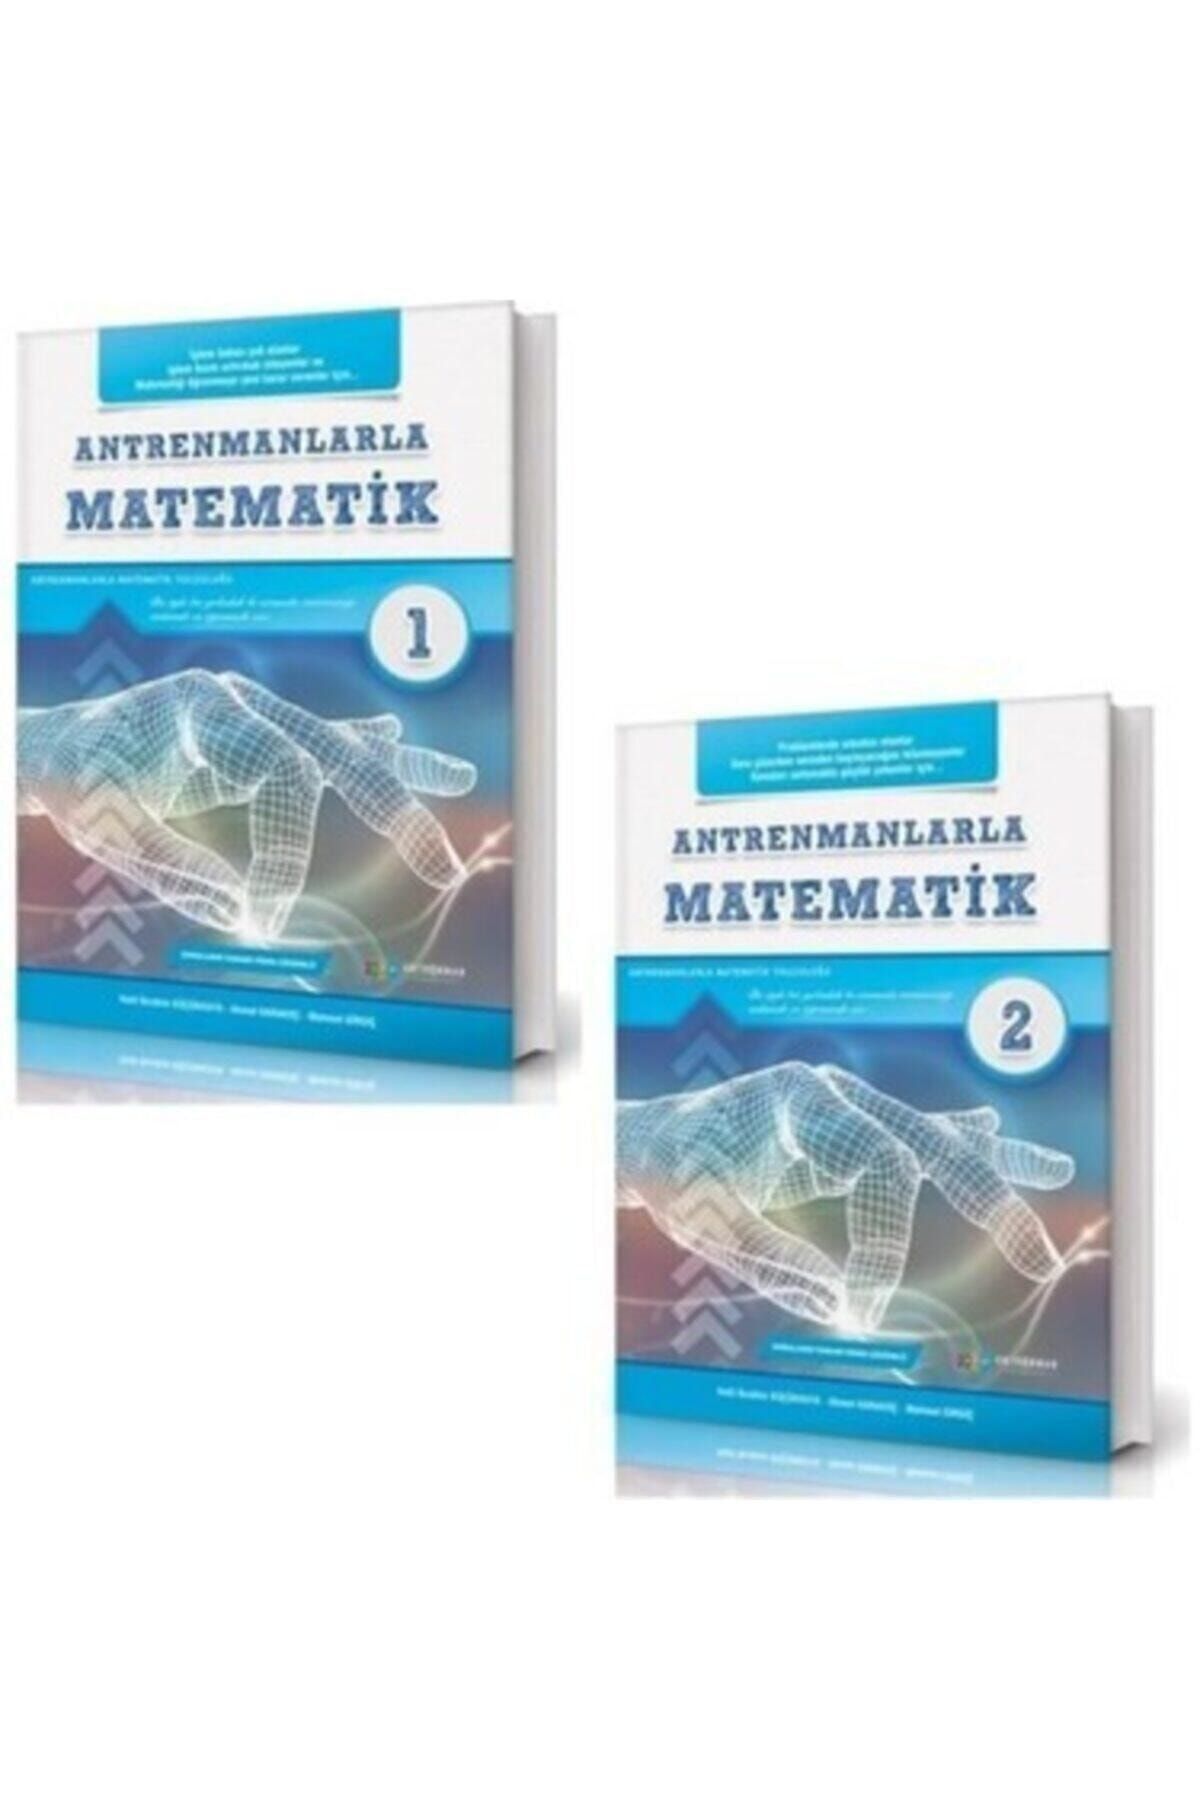 Antrenman Yayınları Antrenmanlarla Matematik 1-2 Set 2 Kitap 2022 Antrmtmtk2027